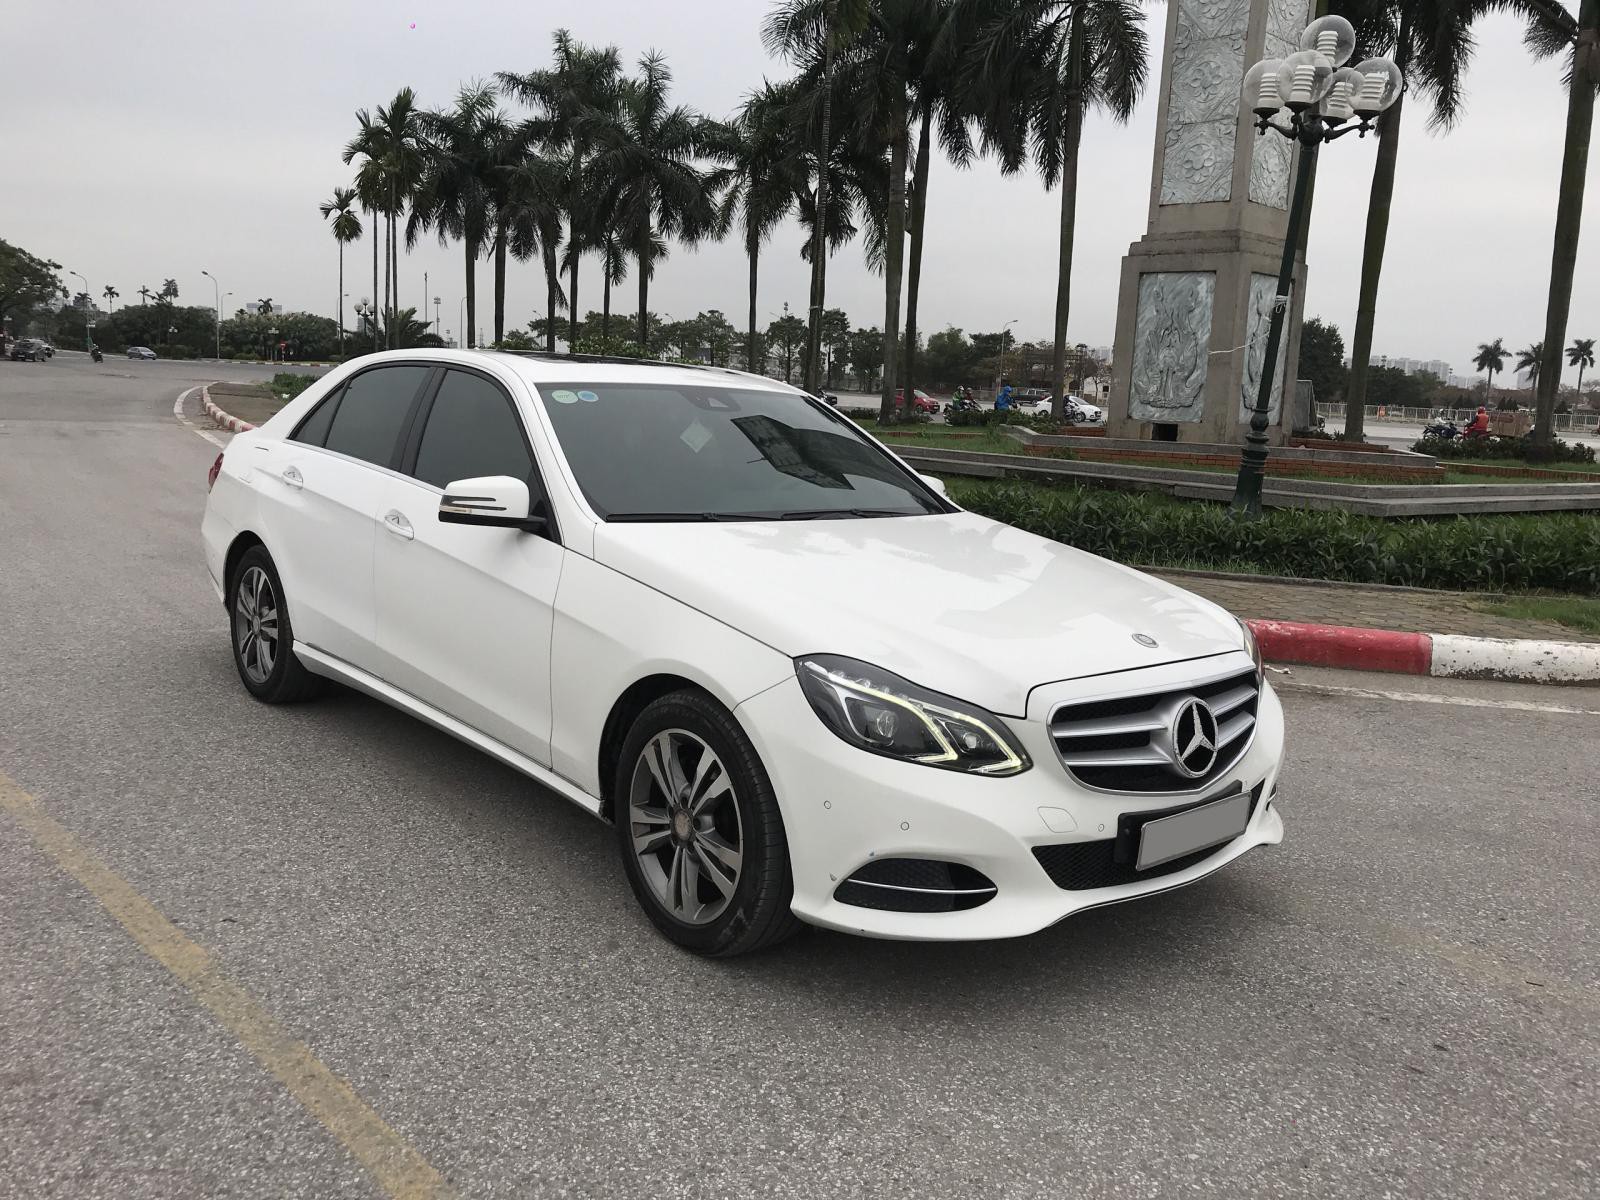 Mercedes E250 2015 màu trắng, nội thất nâu sang trọng, chủ xe bảo dưỡng ...